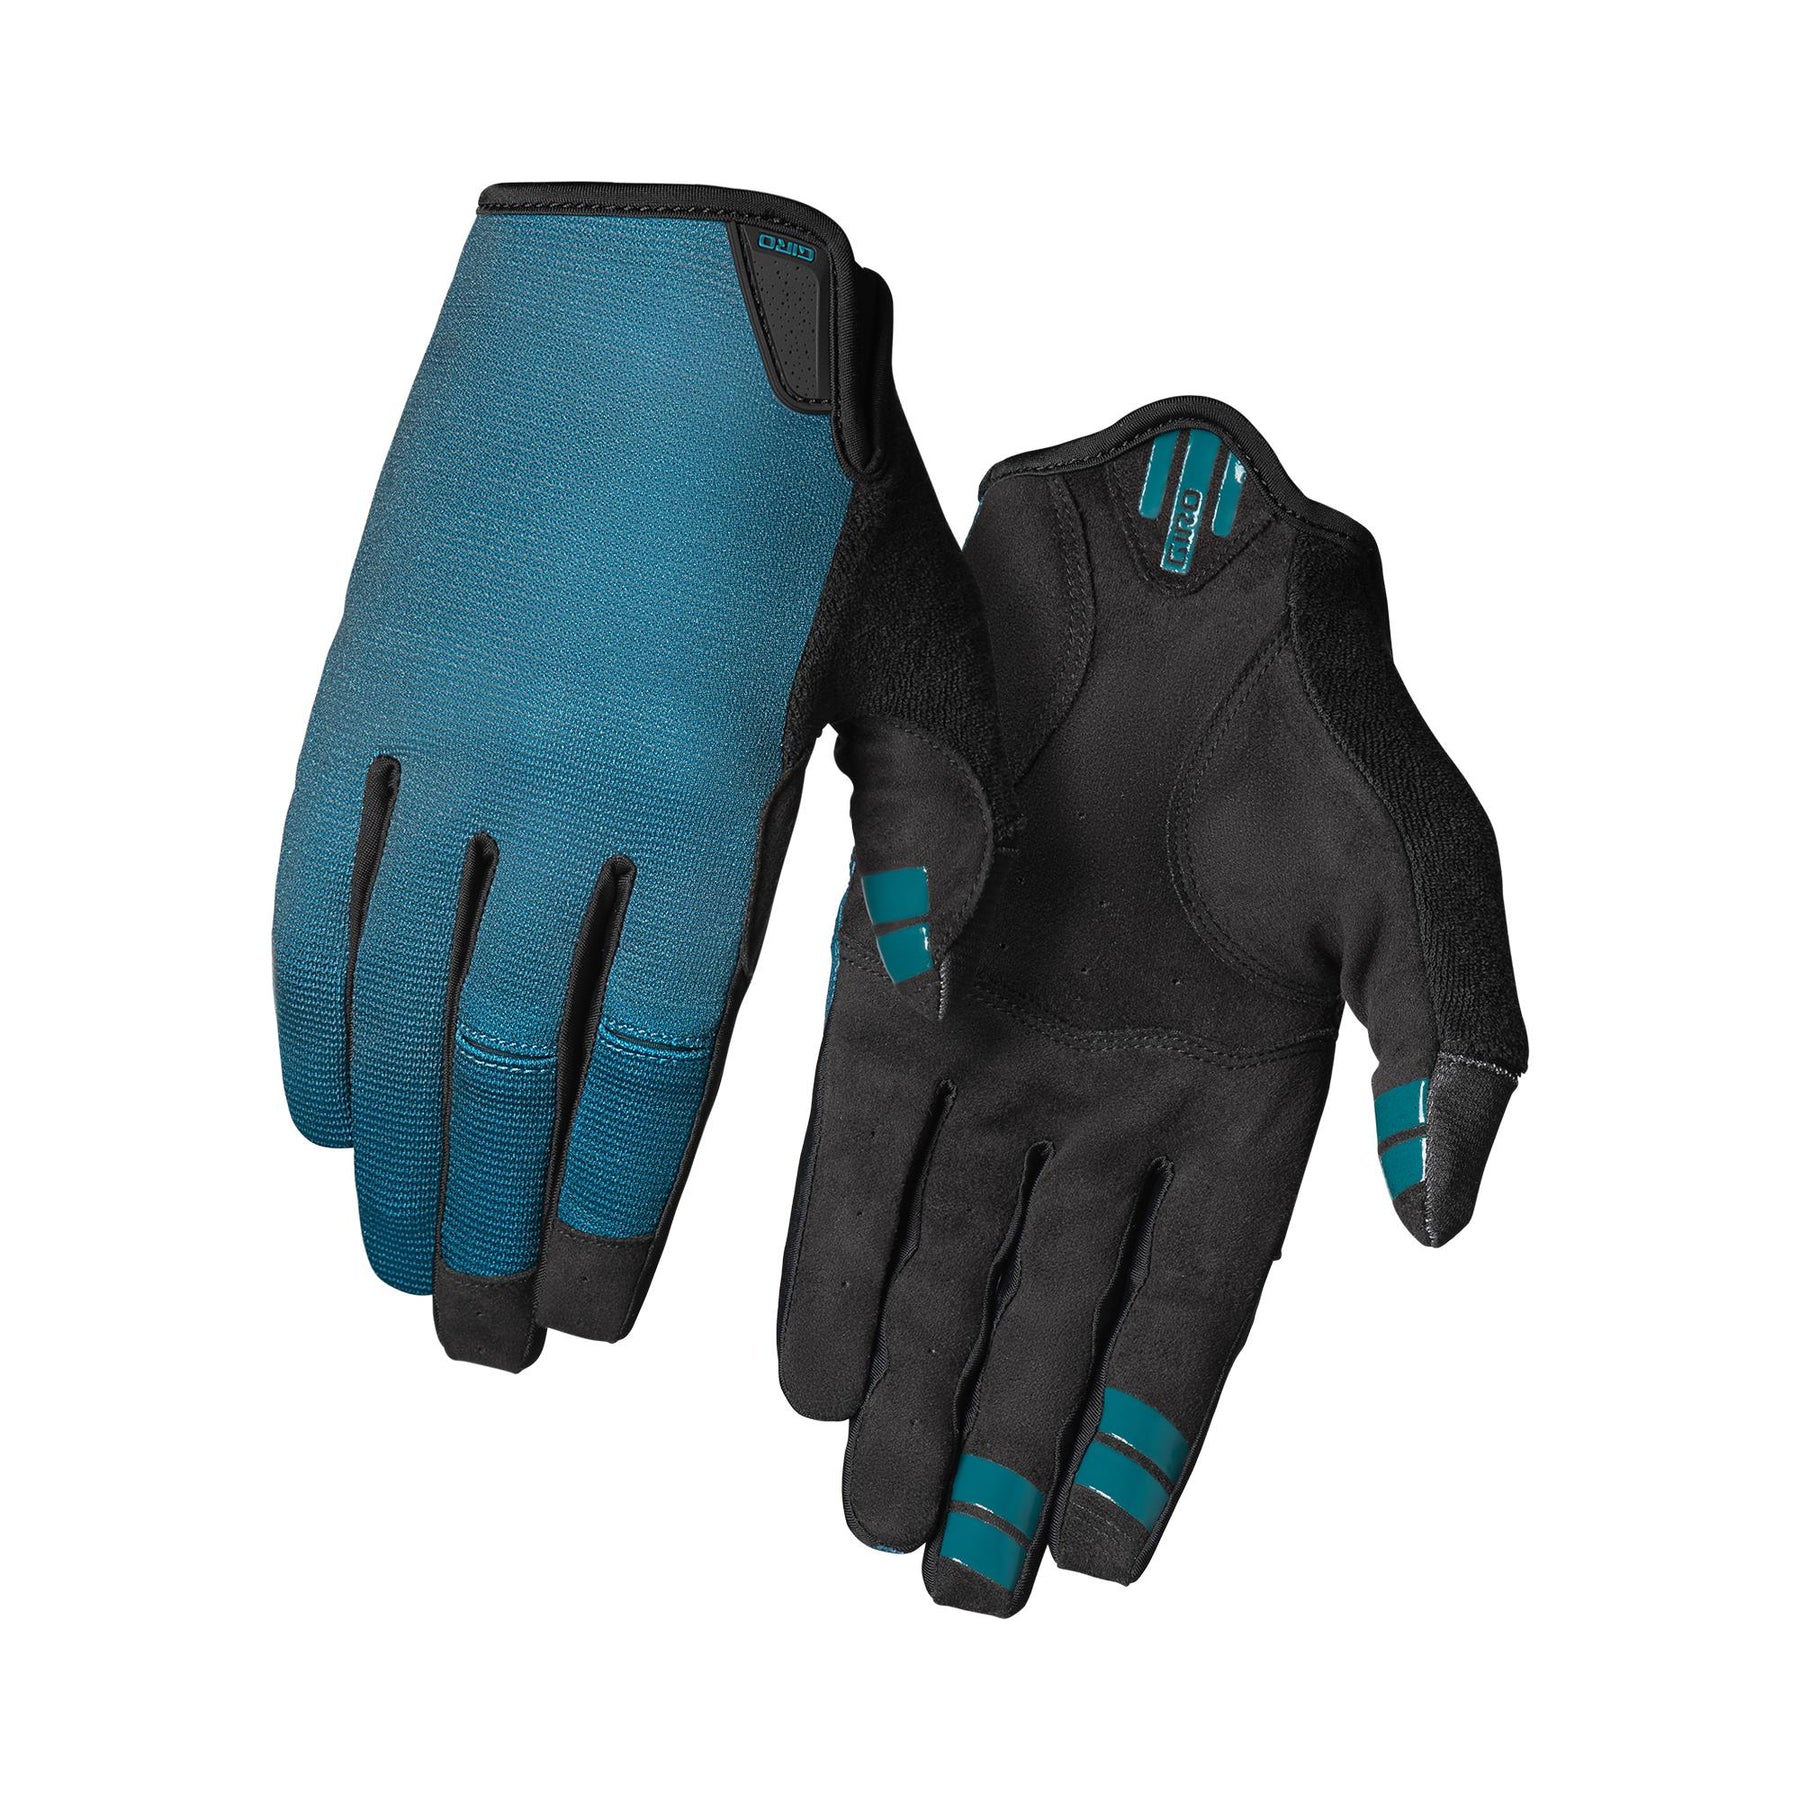 Giro Dnd Mtb Cycling Gloves